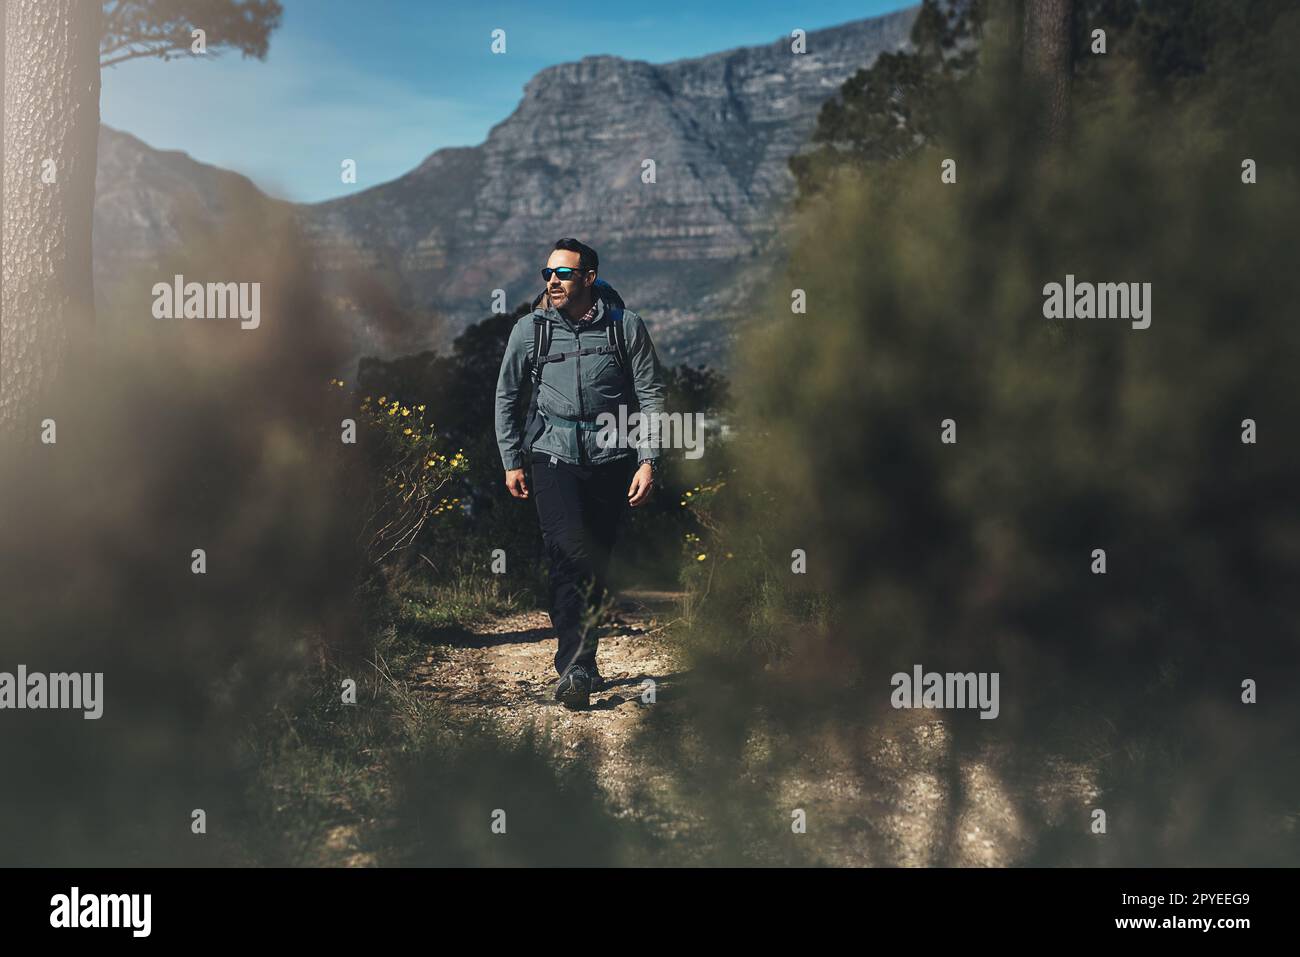 Geh raus und finde, wonach du dich sehnst. Aufnahme eines Mannes mittleren Alters, der in den Bergen wandert. Stockfoto